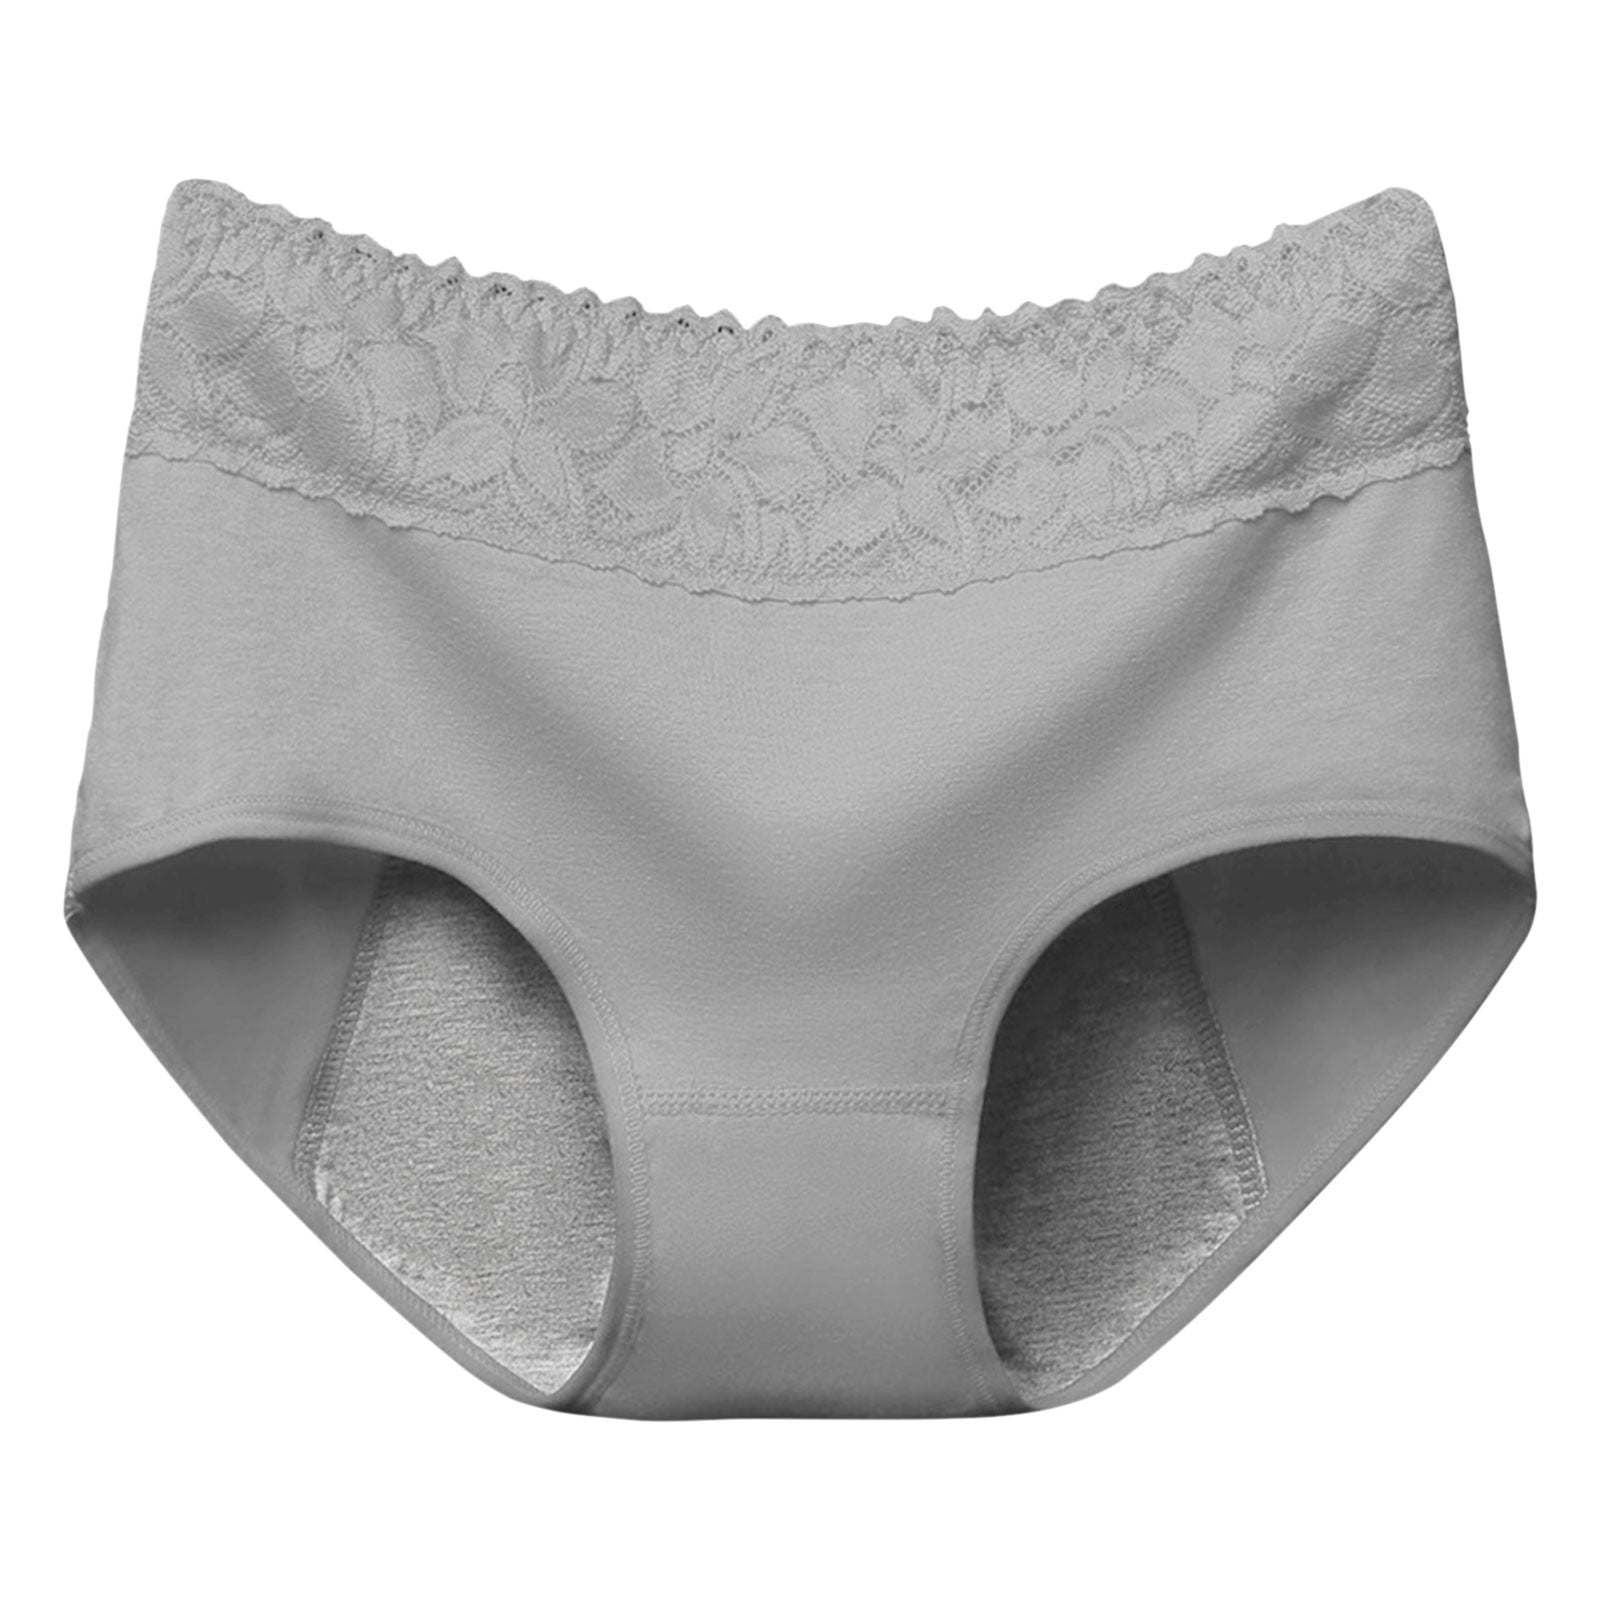 Vedolay Cotton Underwear For Women,Womens Cotton Underwear Soft